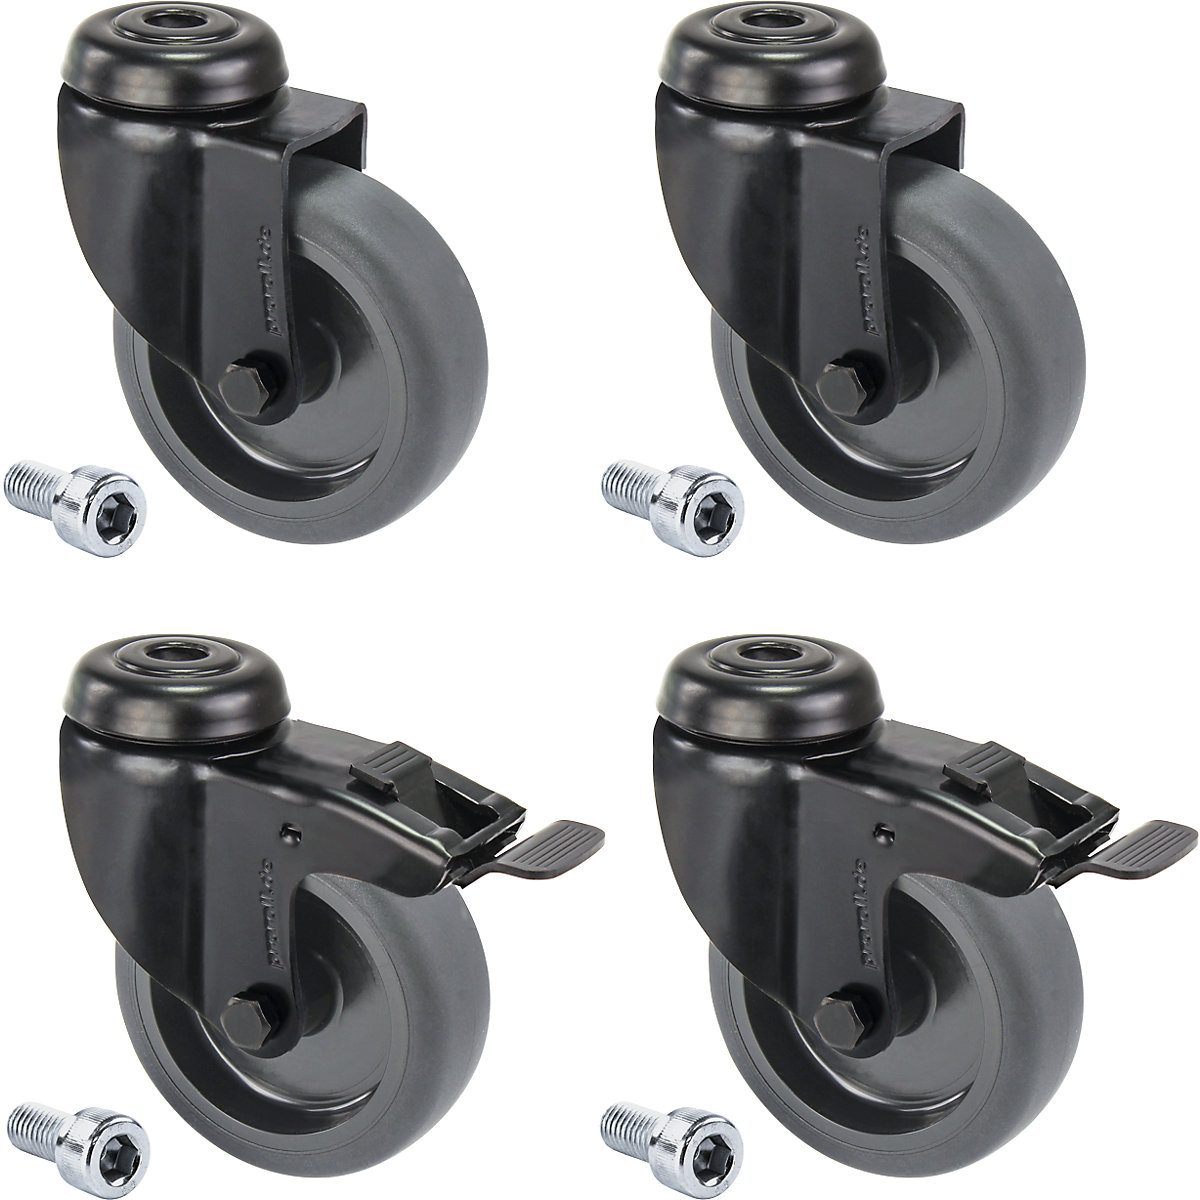 Črno termoplastično gumijasto kolo, natično z luknjo, komplet – Proroll, 4 vrtljiva kolesa, od tega 2 z dvojno zavoro, kolo Ø x širina 100 x 25 mm-2